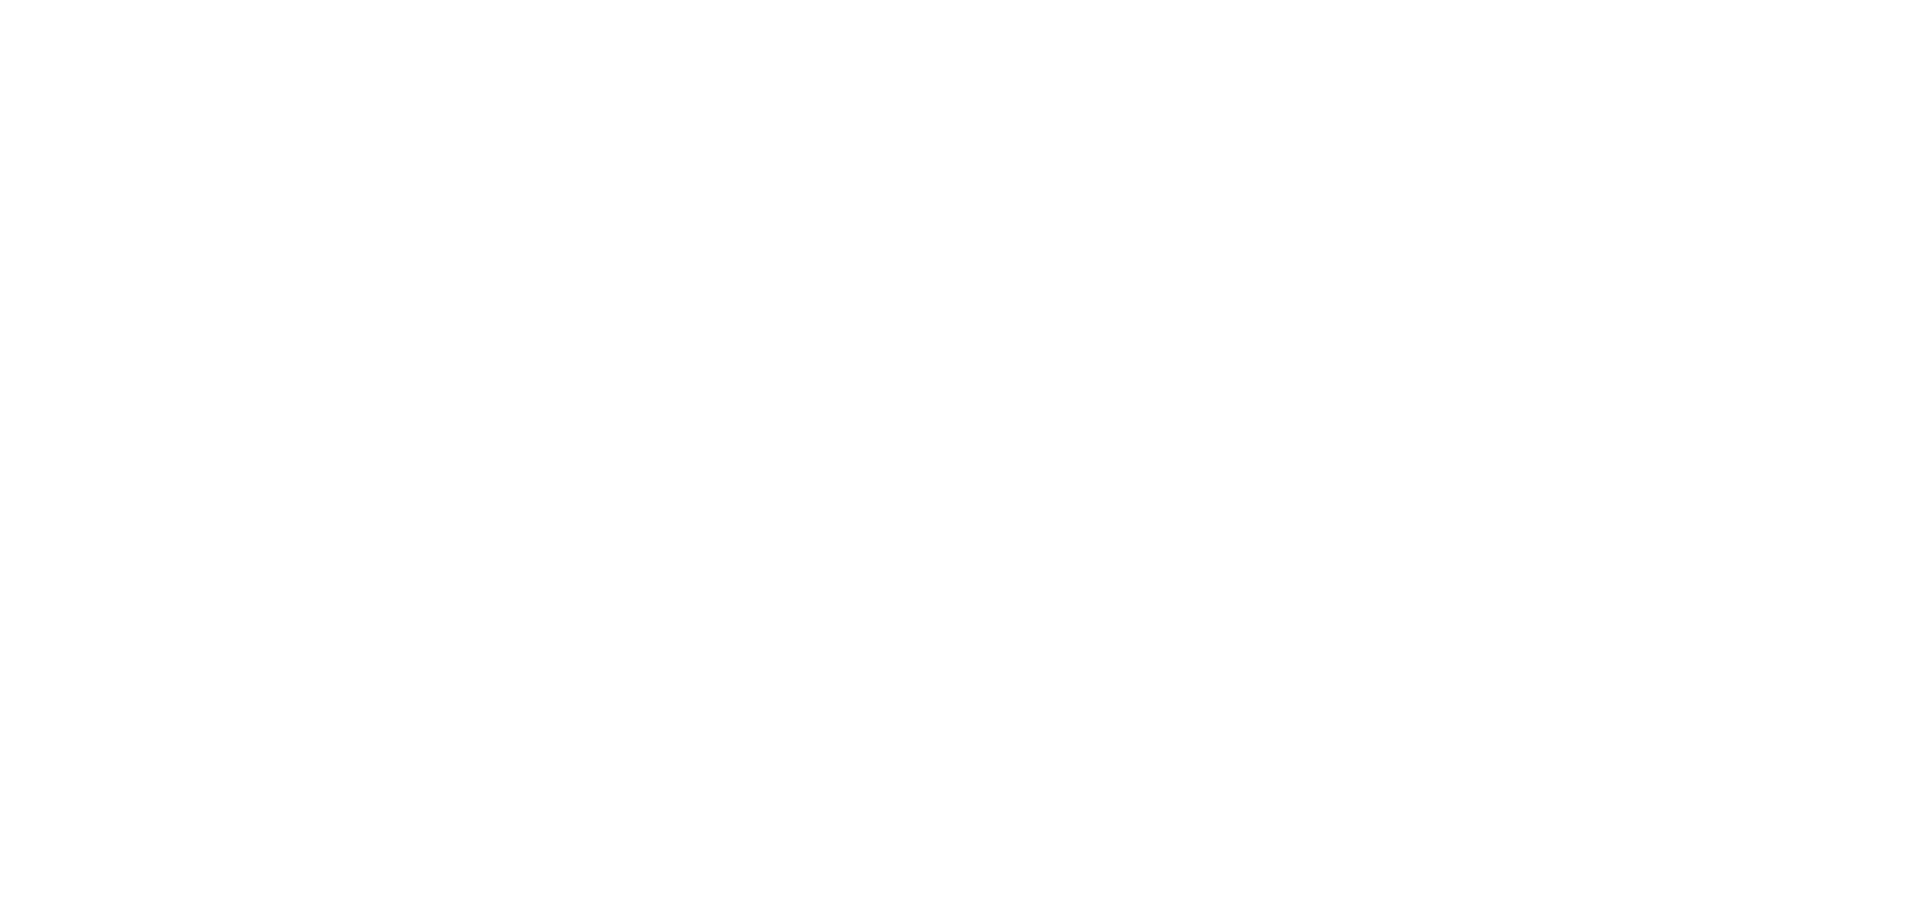 Macer Transportation